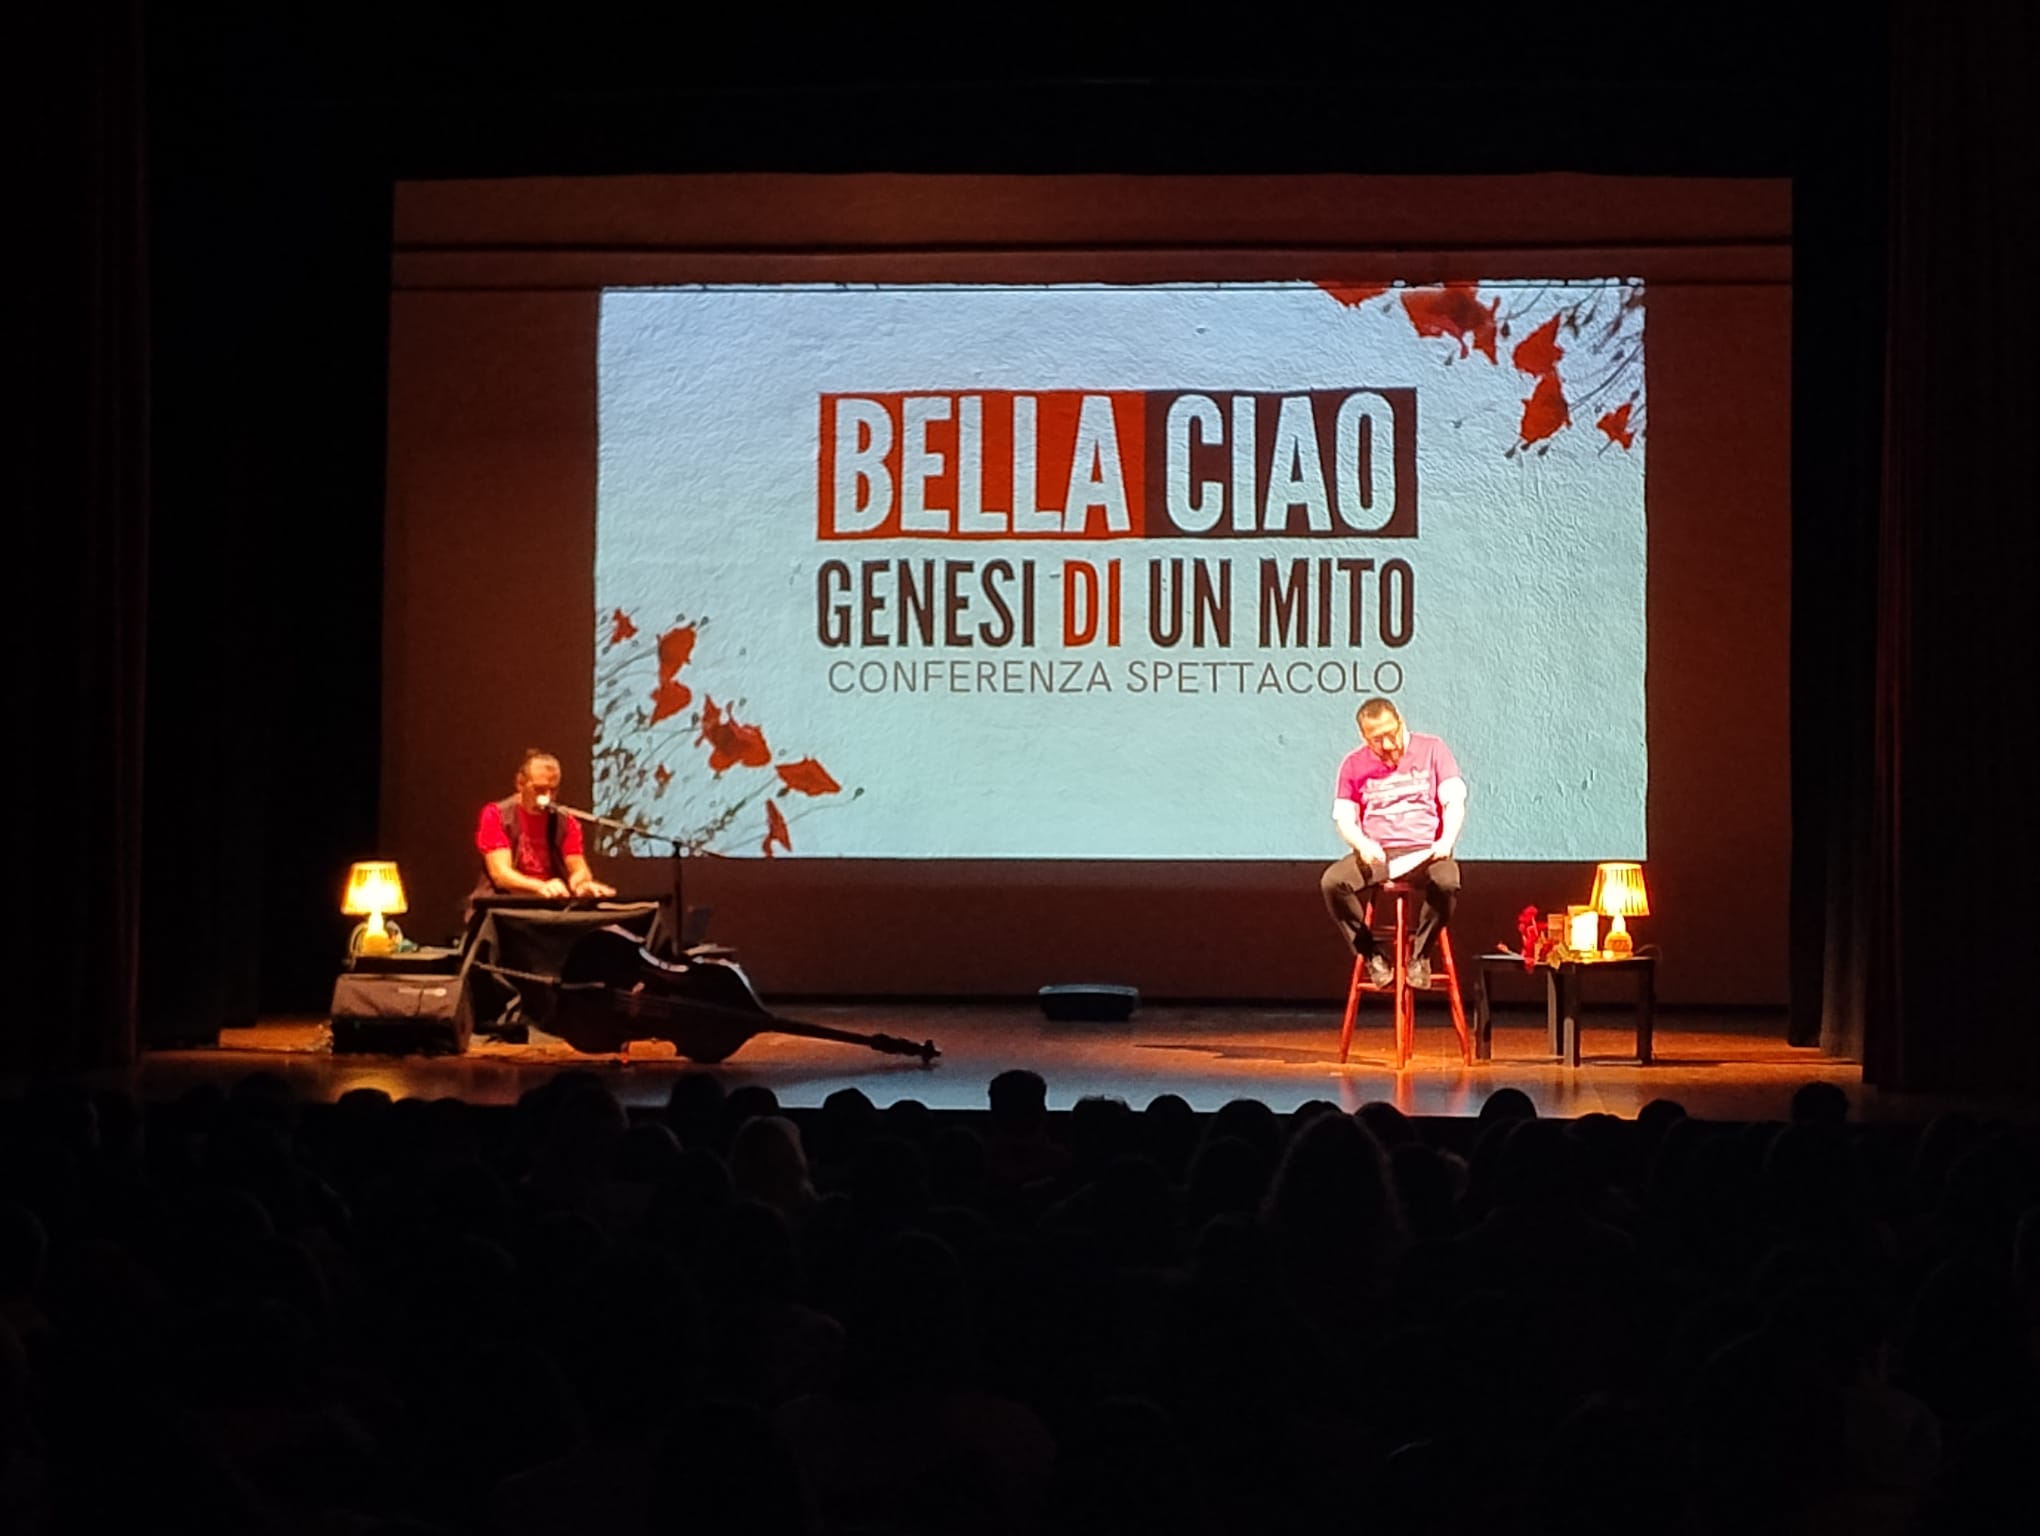 Bella Ciao genesi di un mito,  studenti a teatro per una conferenza/spettacolo